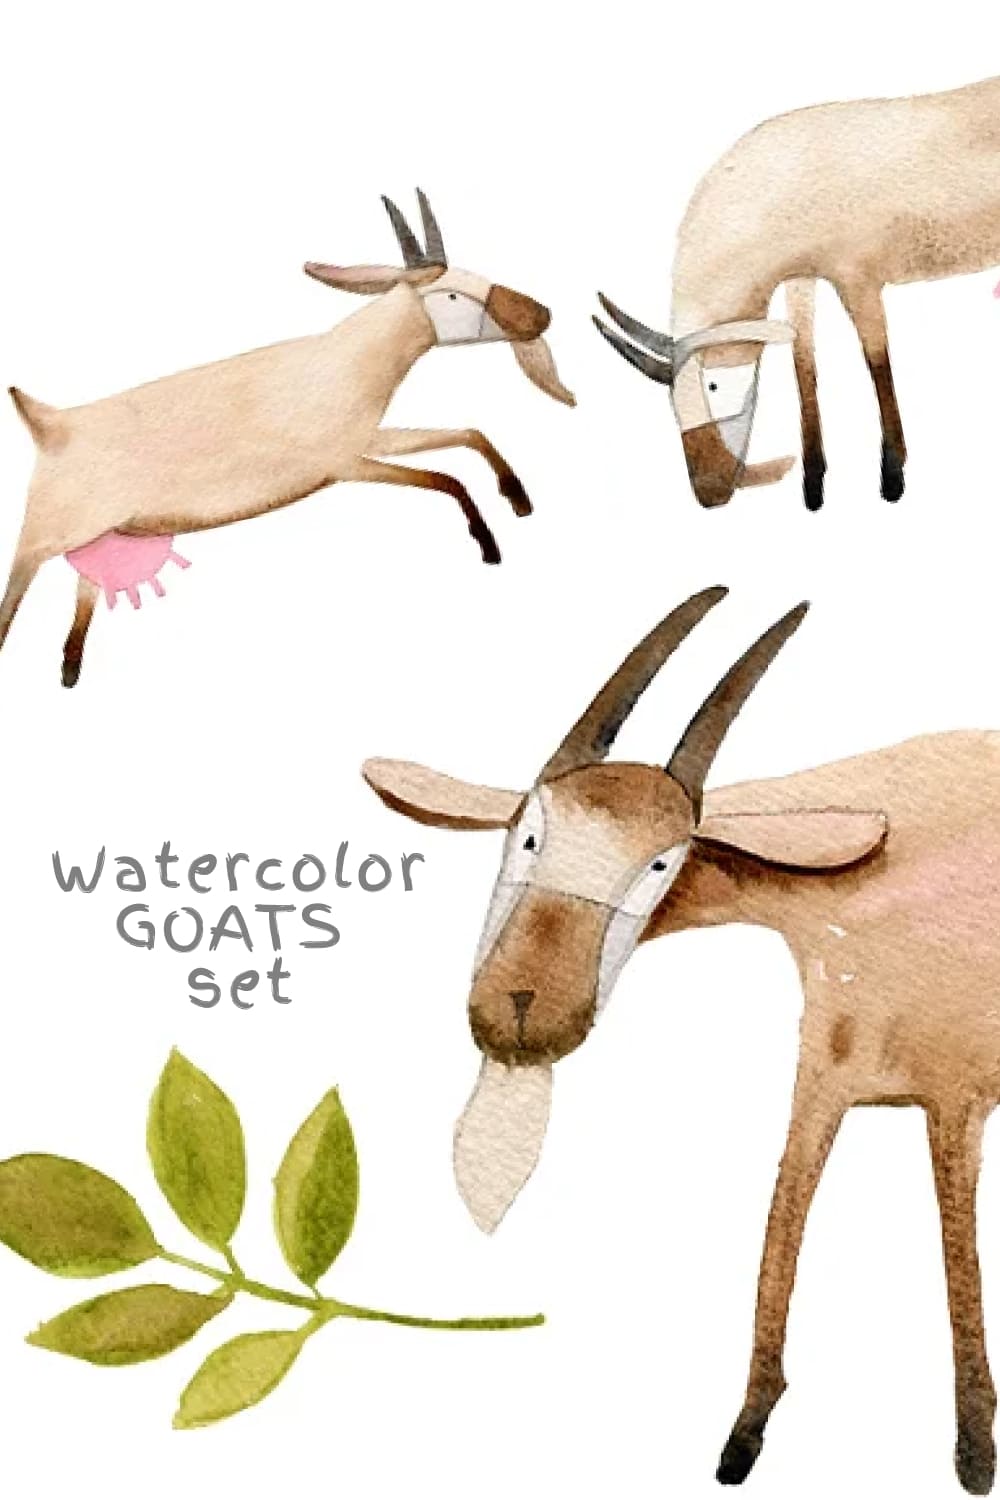 Watercolor Goats Set pinterest image.